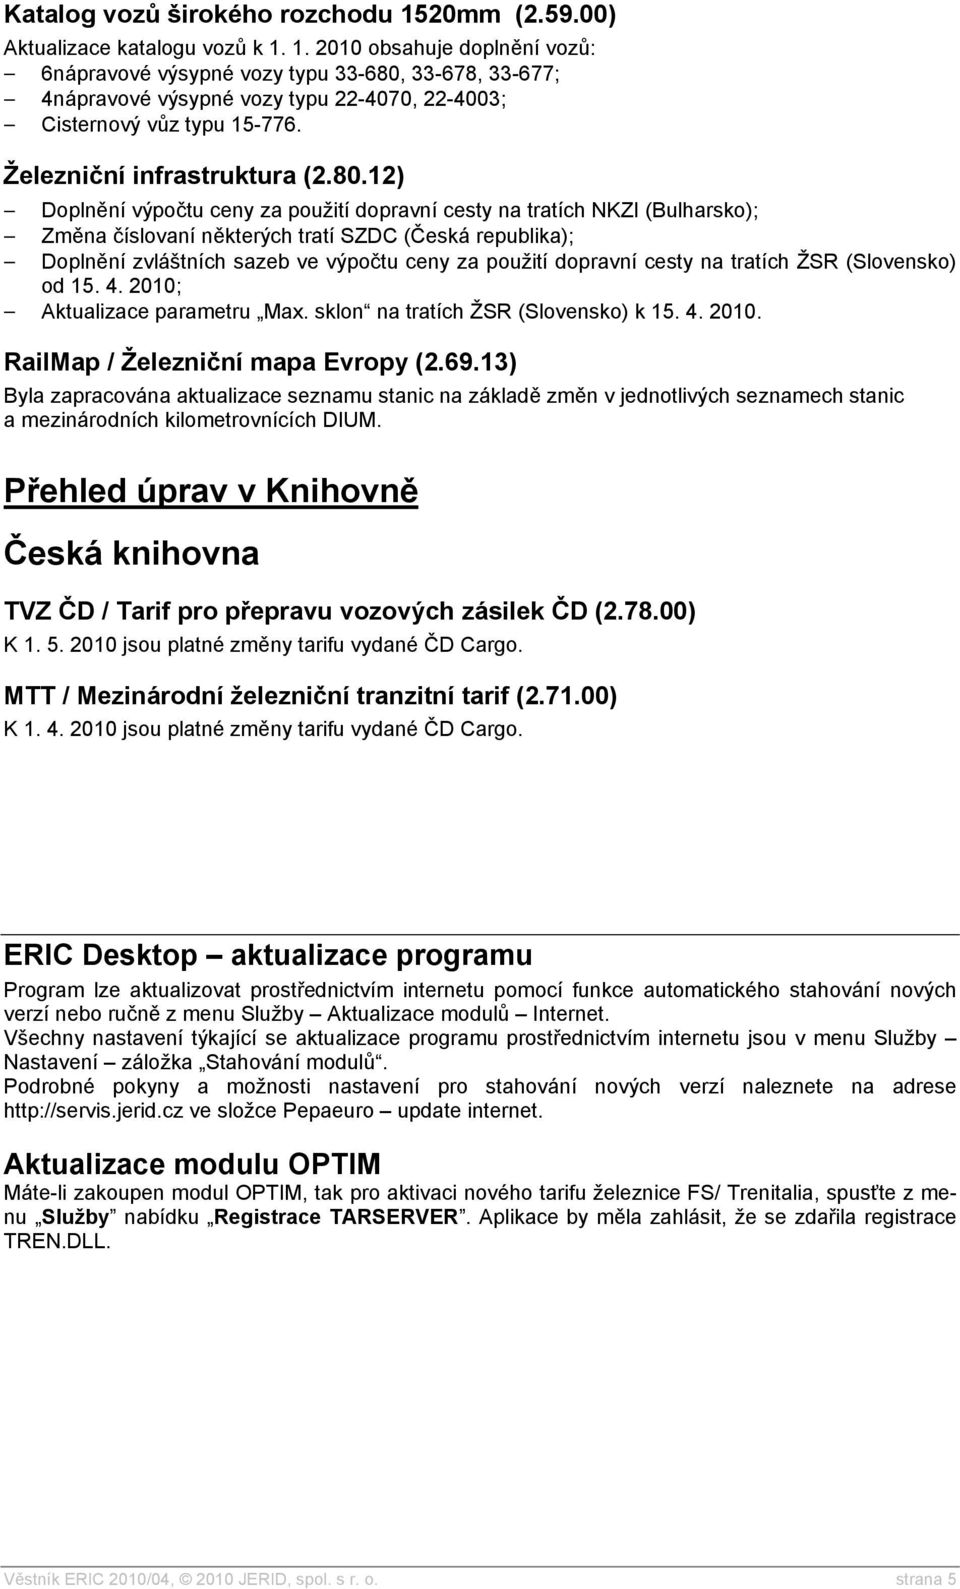 12) Doplnění výpočtu ceny za použití dopravní cesty na tratích NKZI (Bulharsko); Změna číslovaní některých tratí SZDC (Česká republika); Doplnění zvláštních sazeb ve výpočtu ceny za použití dopravní